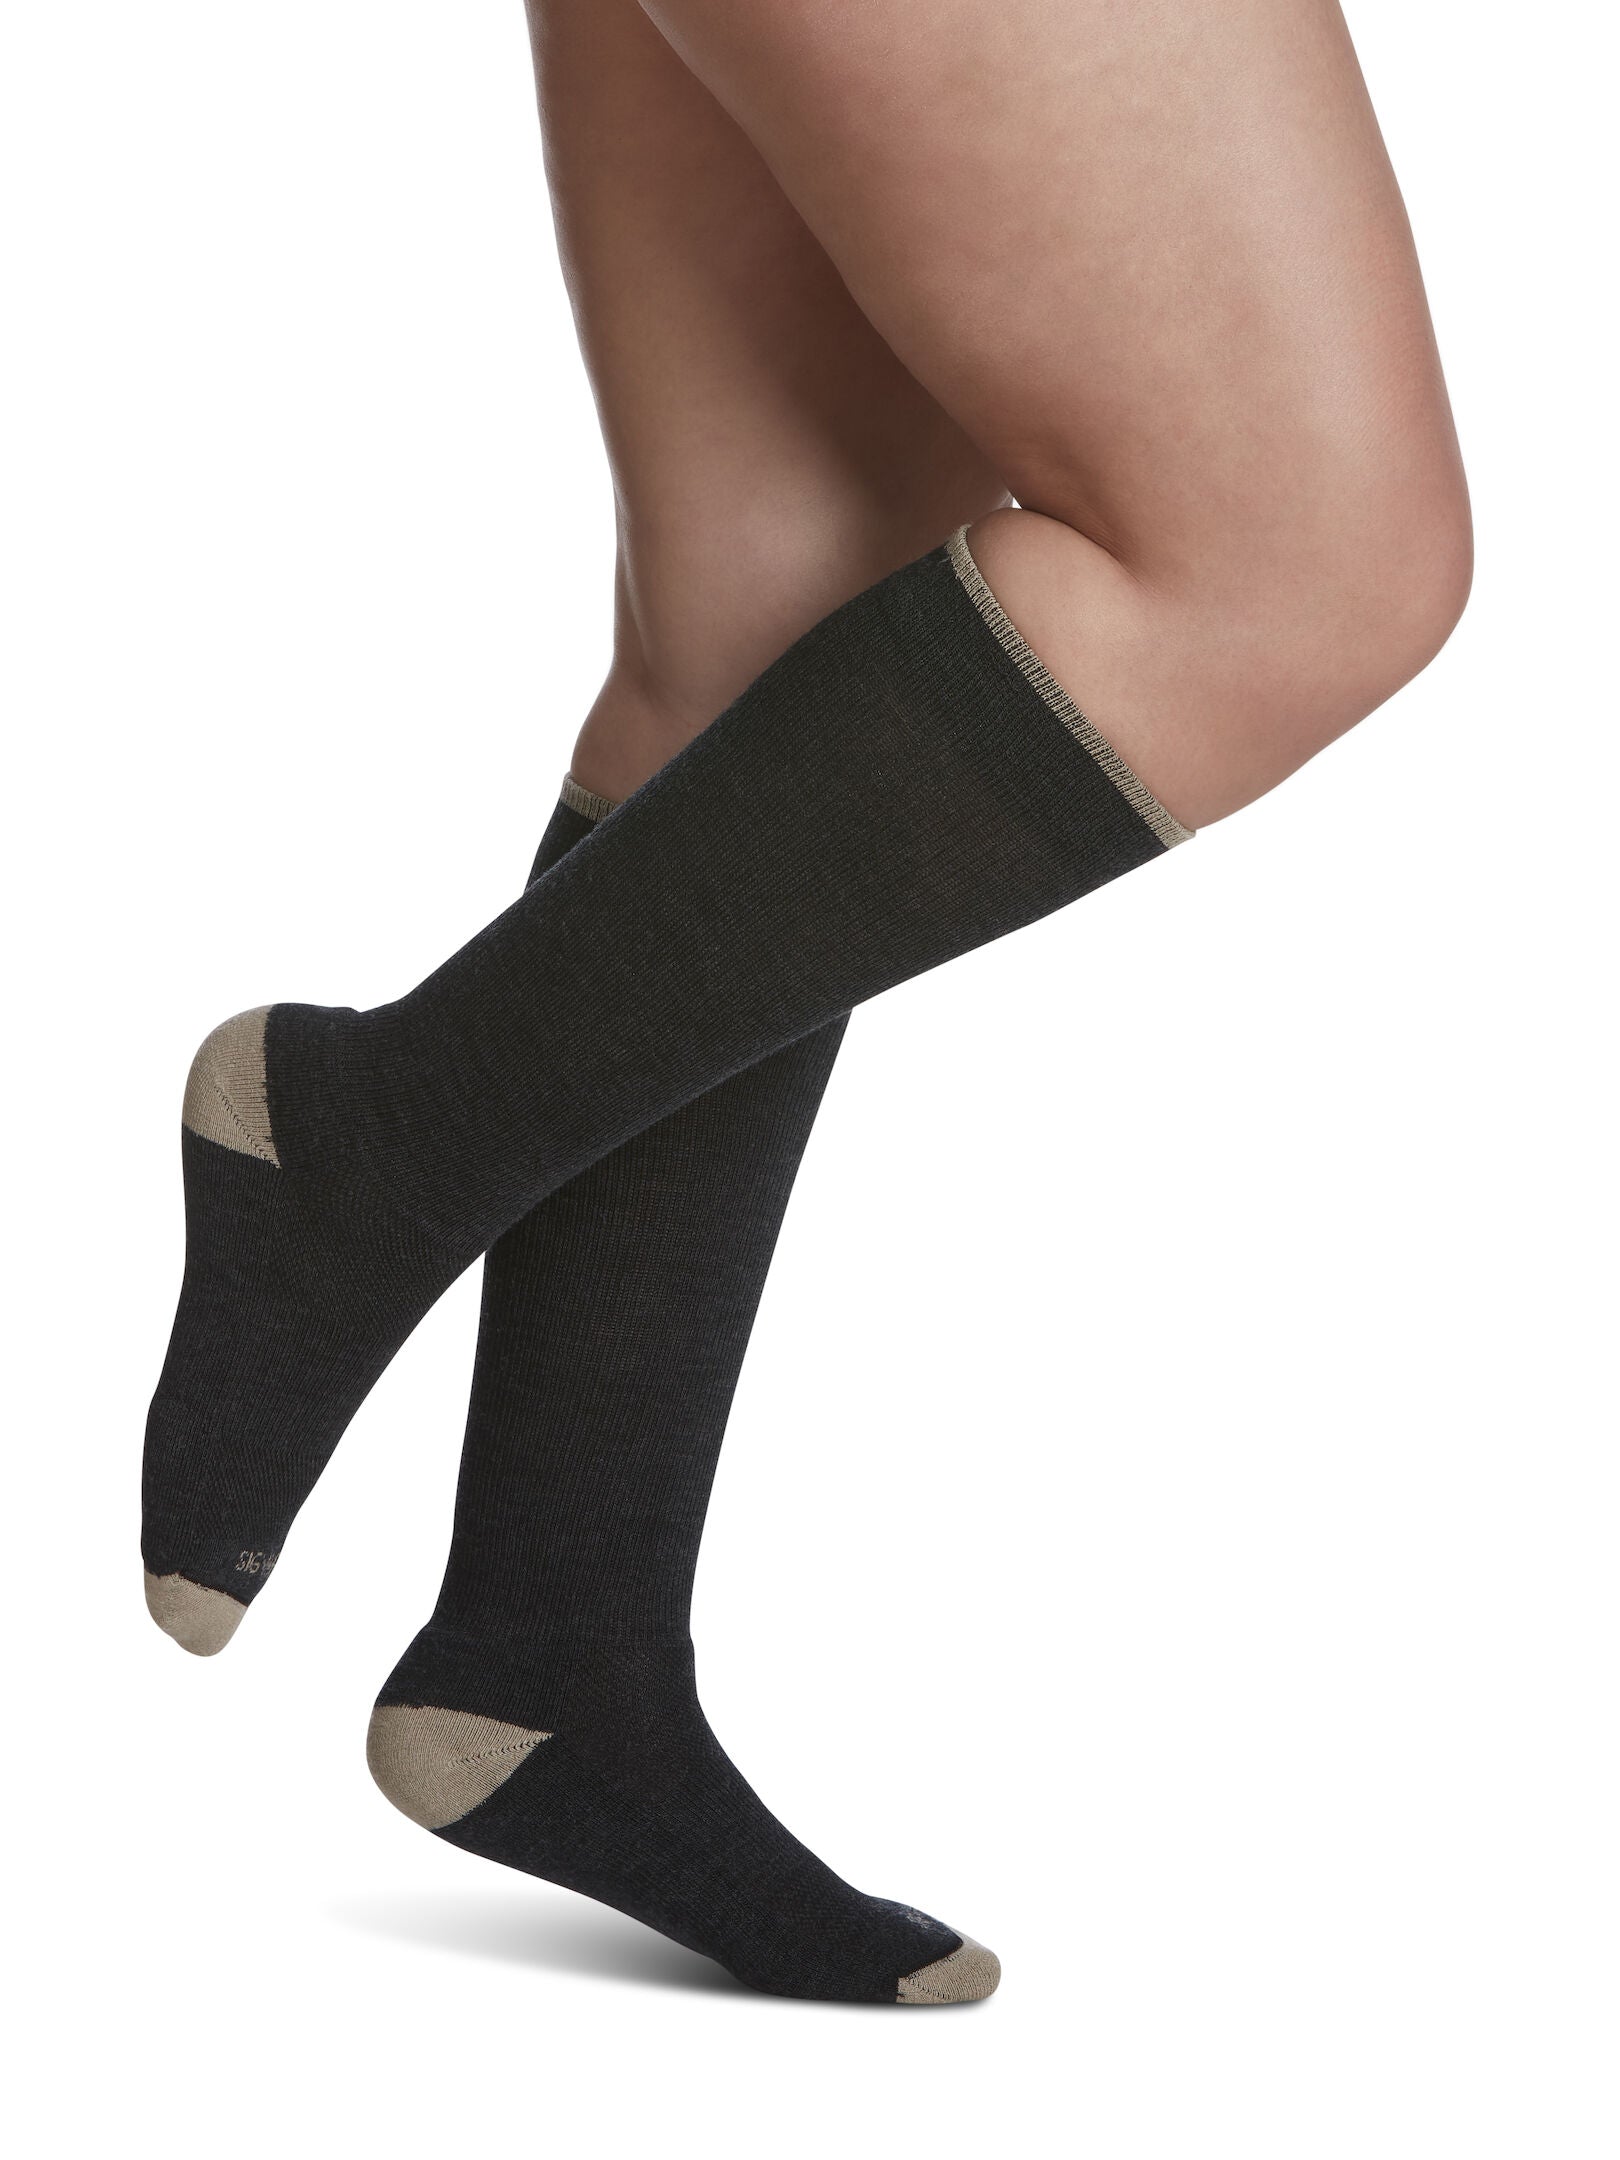 Black Merino Flight Socks